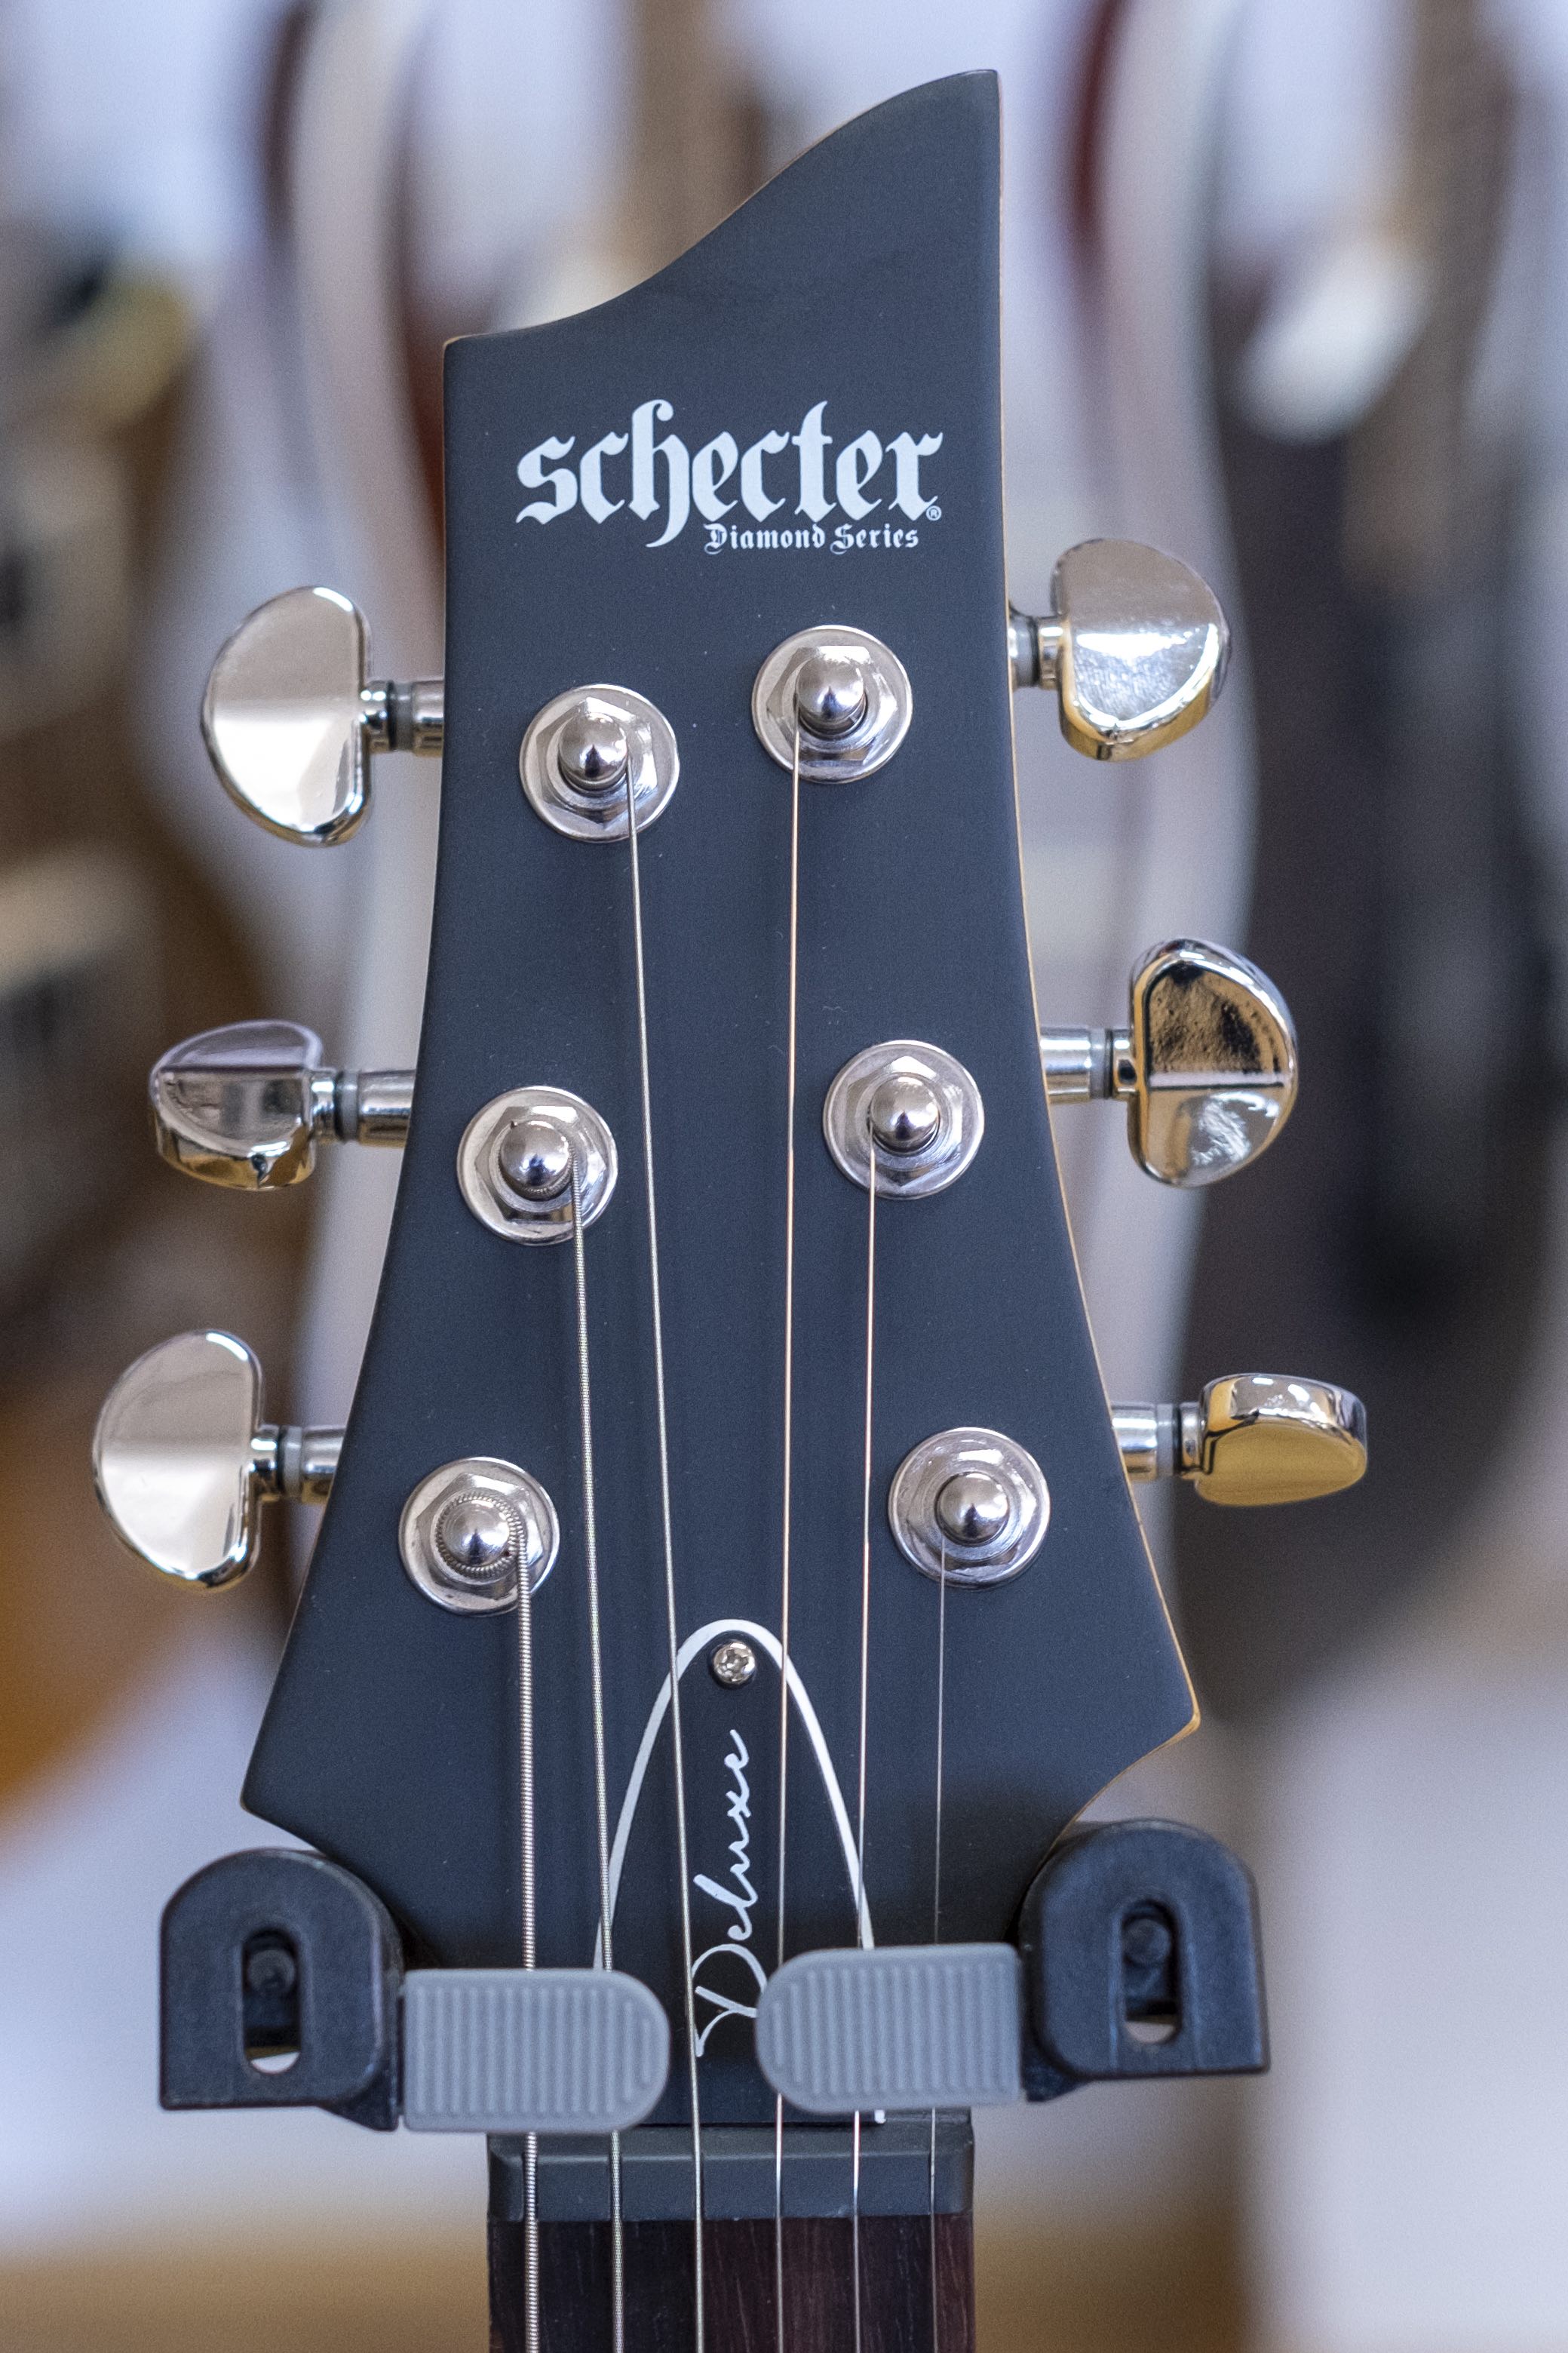 Schecter C6-Deluxe Electric Guitar (Satin Black)